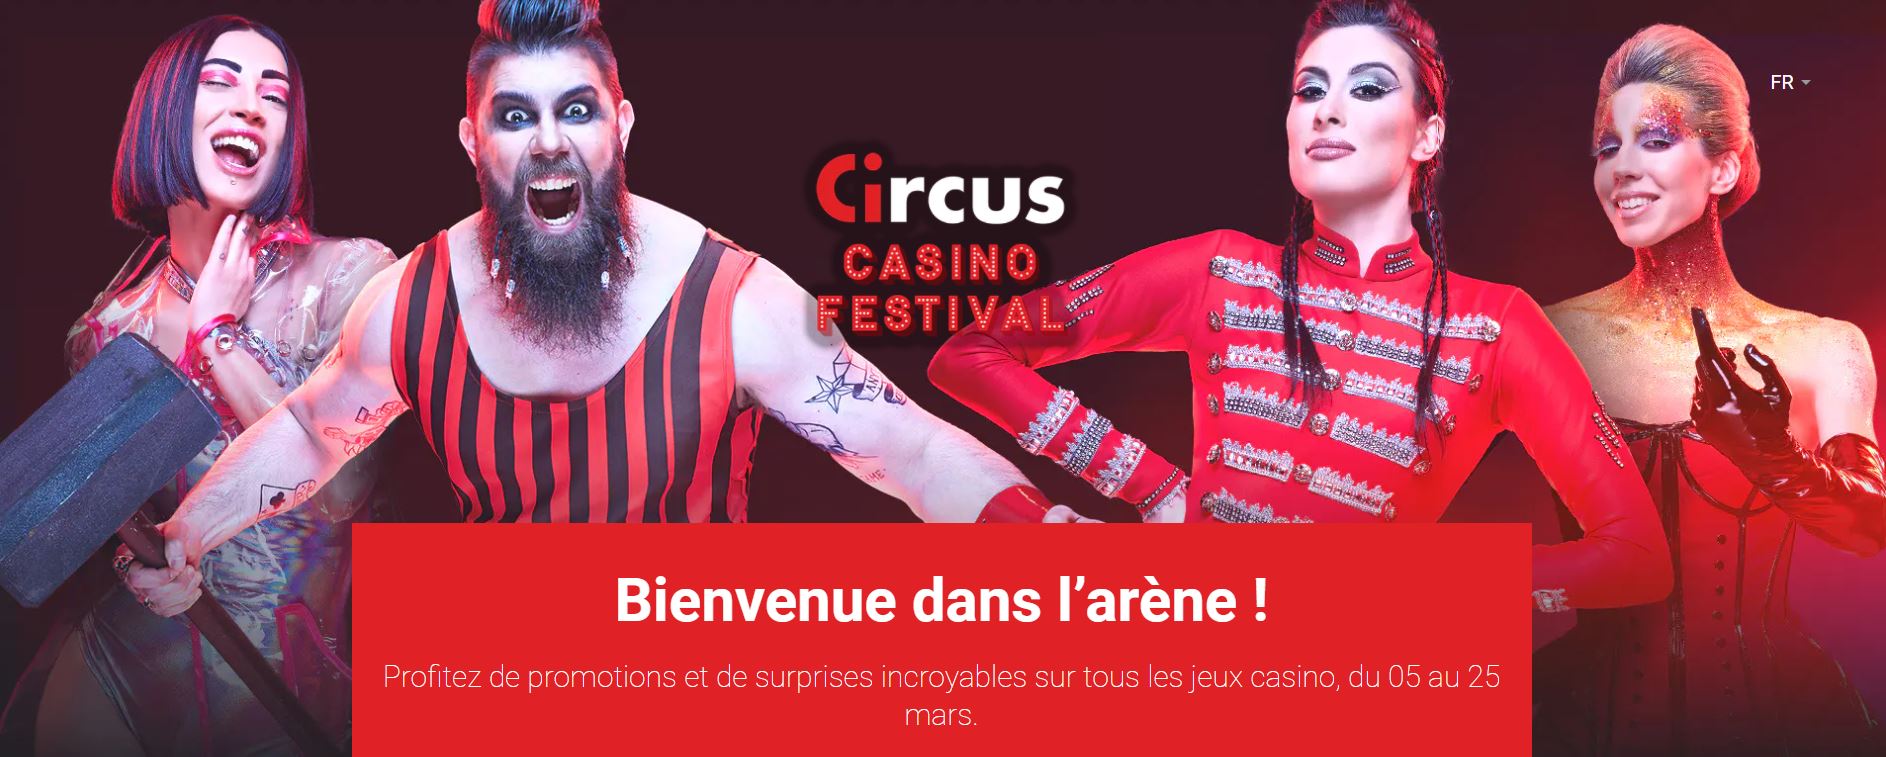 Circus Casino Festival